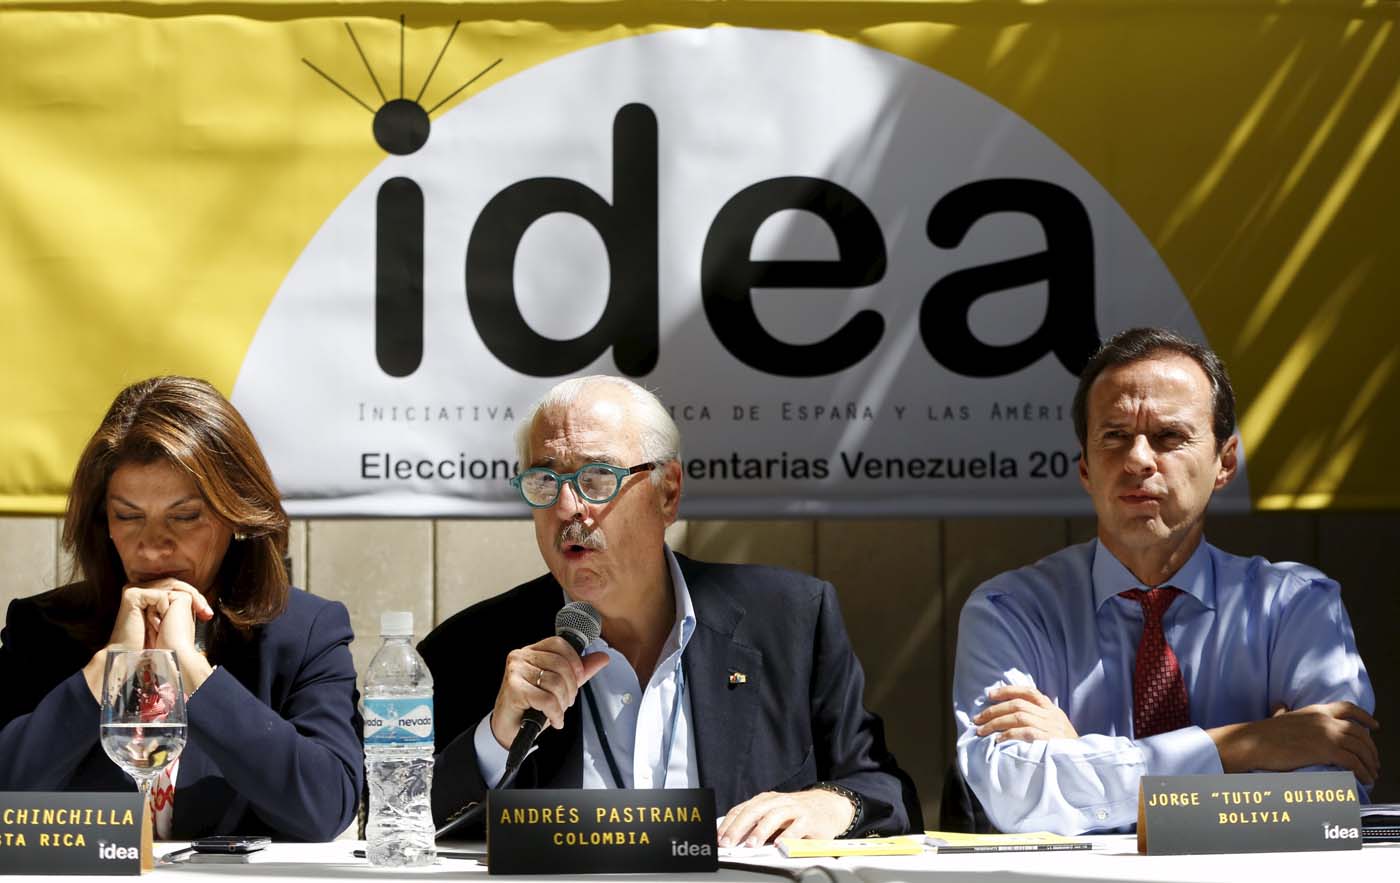 Miembros del Grupo Idea, atentos a la situación de la primaria en Venezuela